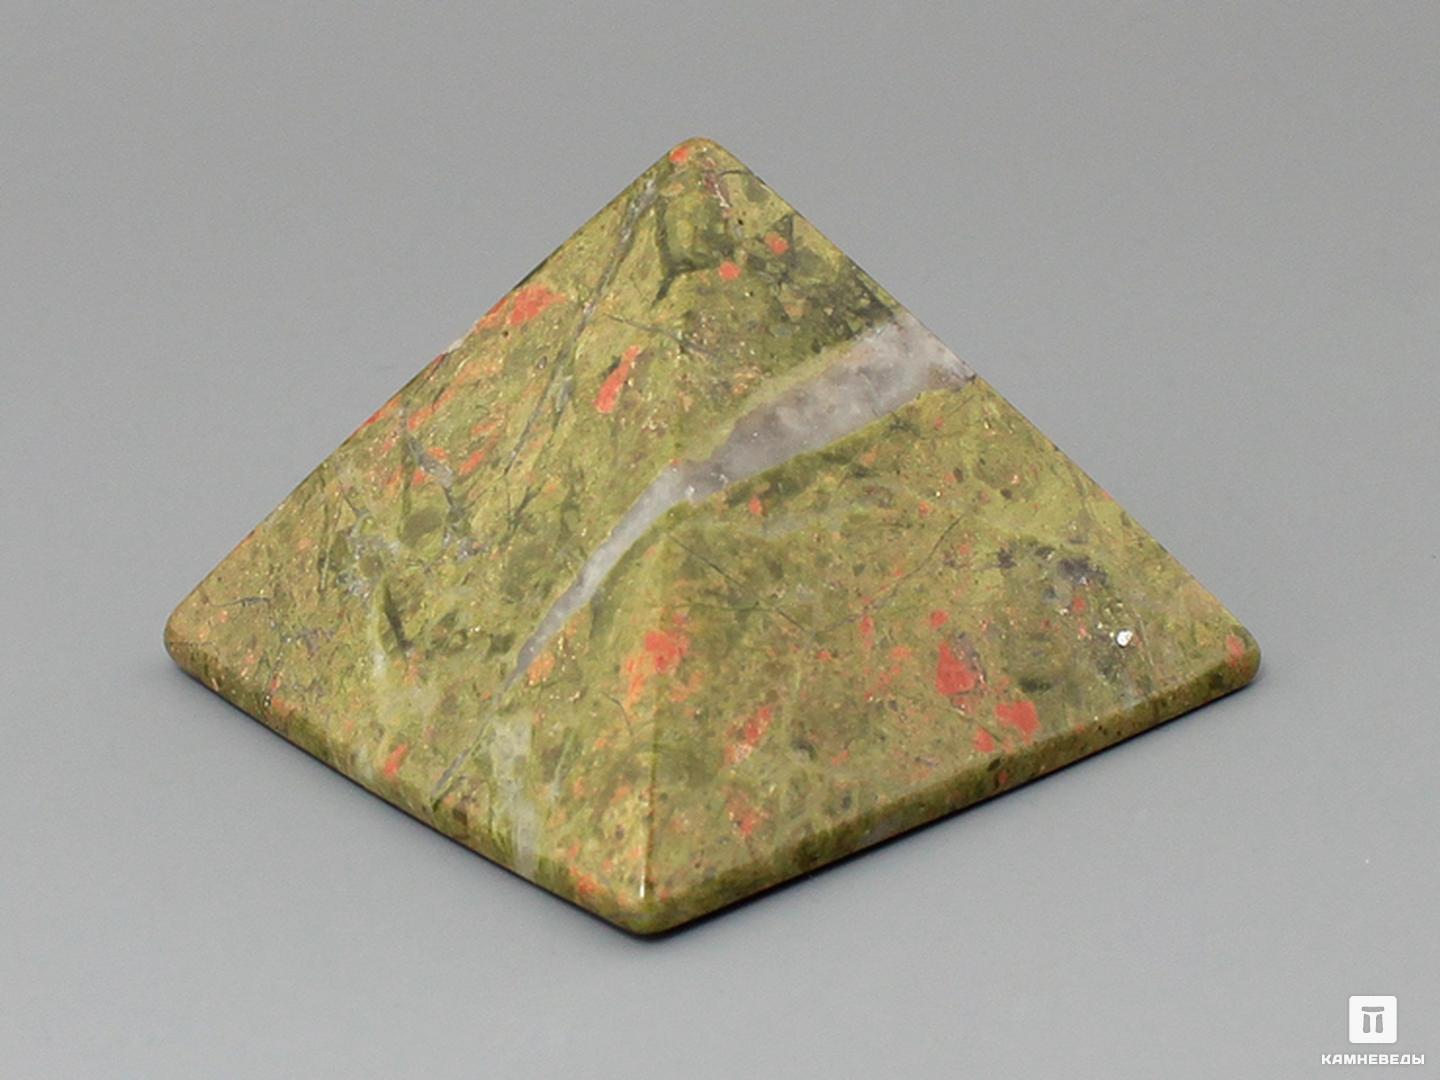 Пирамида из унакита, 5х5 см пирамида из шунгита 3 см высокая восьмигранная полированная